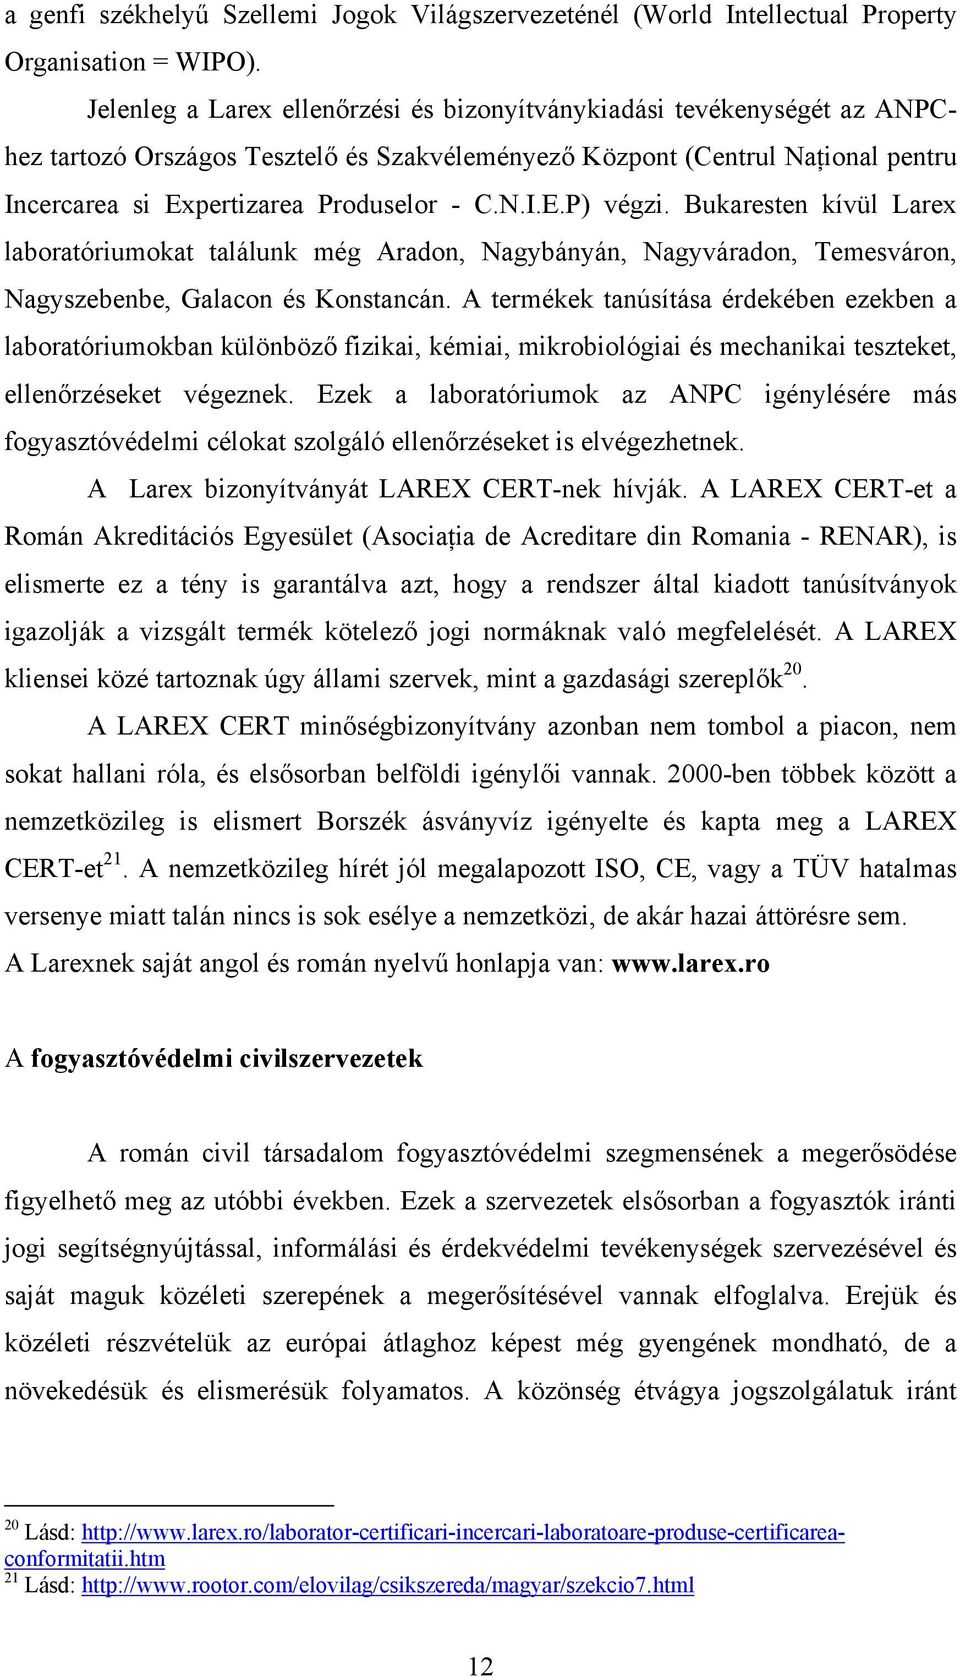 Bukaresten kívül Larex laboratóriumokat találunk még Aradon, Nagybányán, Nagyváradon, Temesváron, Nagyszebenbe, Galacon és Konstancán.